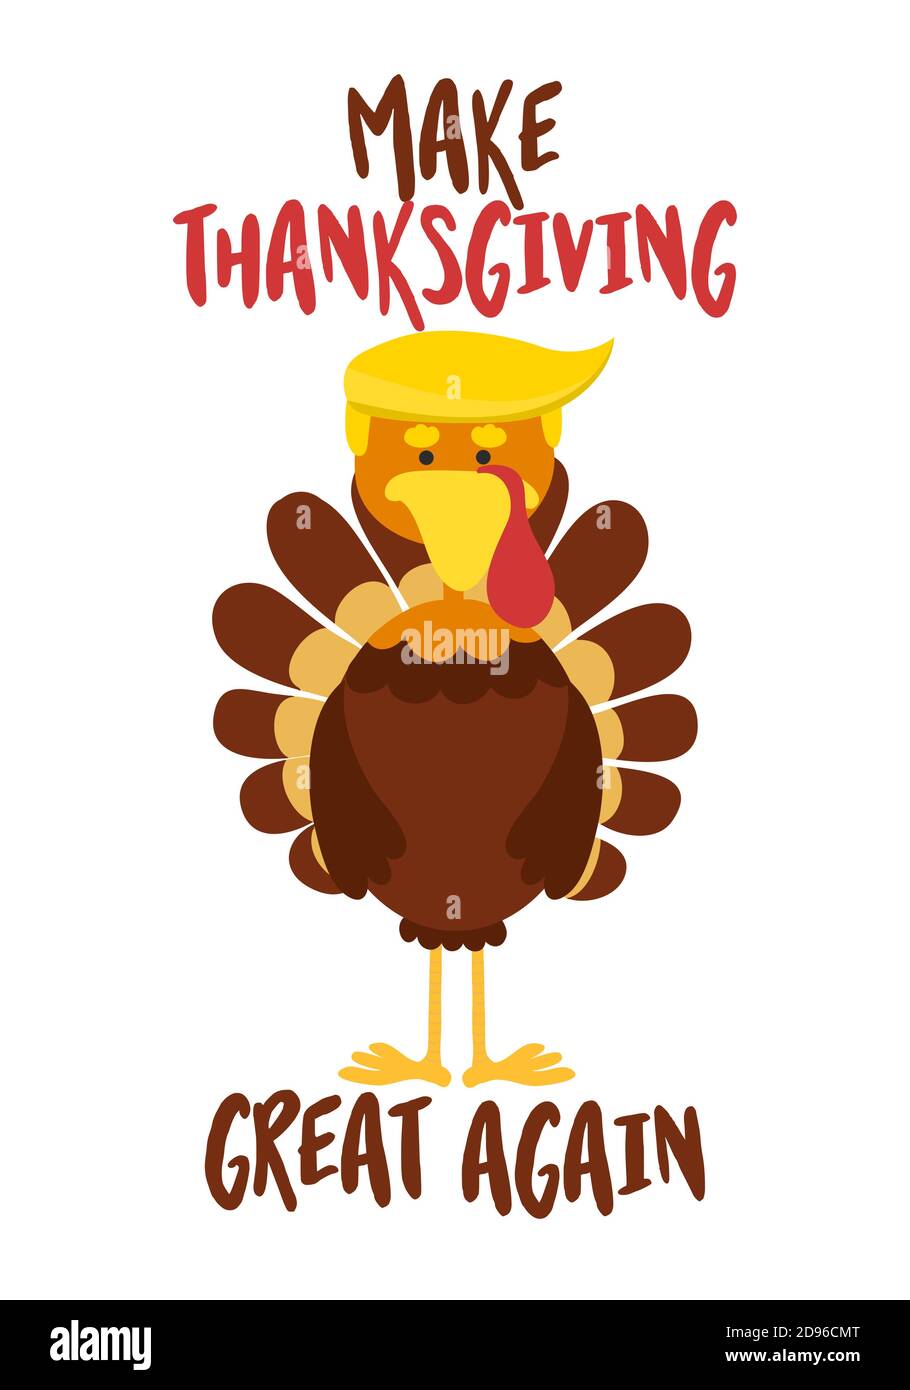 Machen Sie Thanksgiving wieder groß - Thanksgiving Day Poster mit niedlichen truthahn in Trump Perücke. Herbstfarben-Poster. Gut für Schrottbuchungen, Poster, Begrüßung Stock Vektor